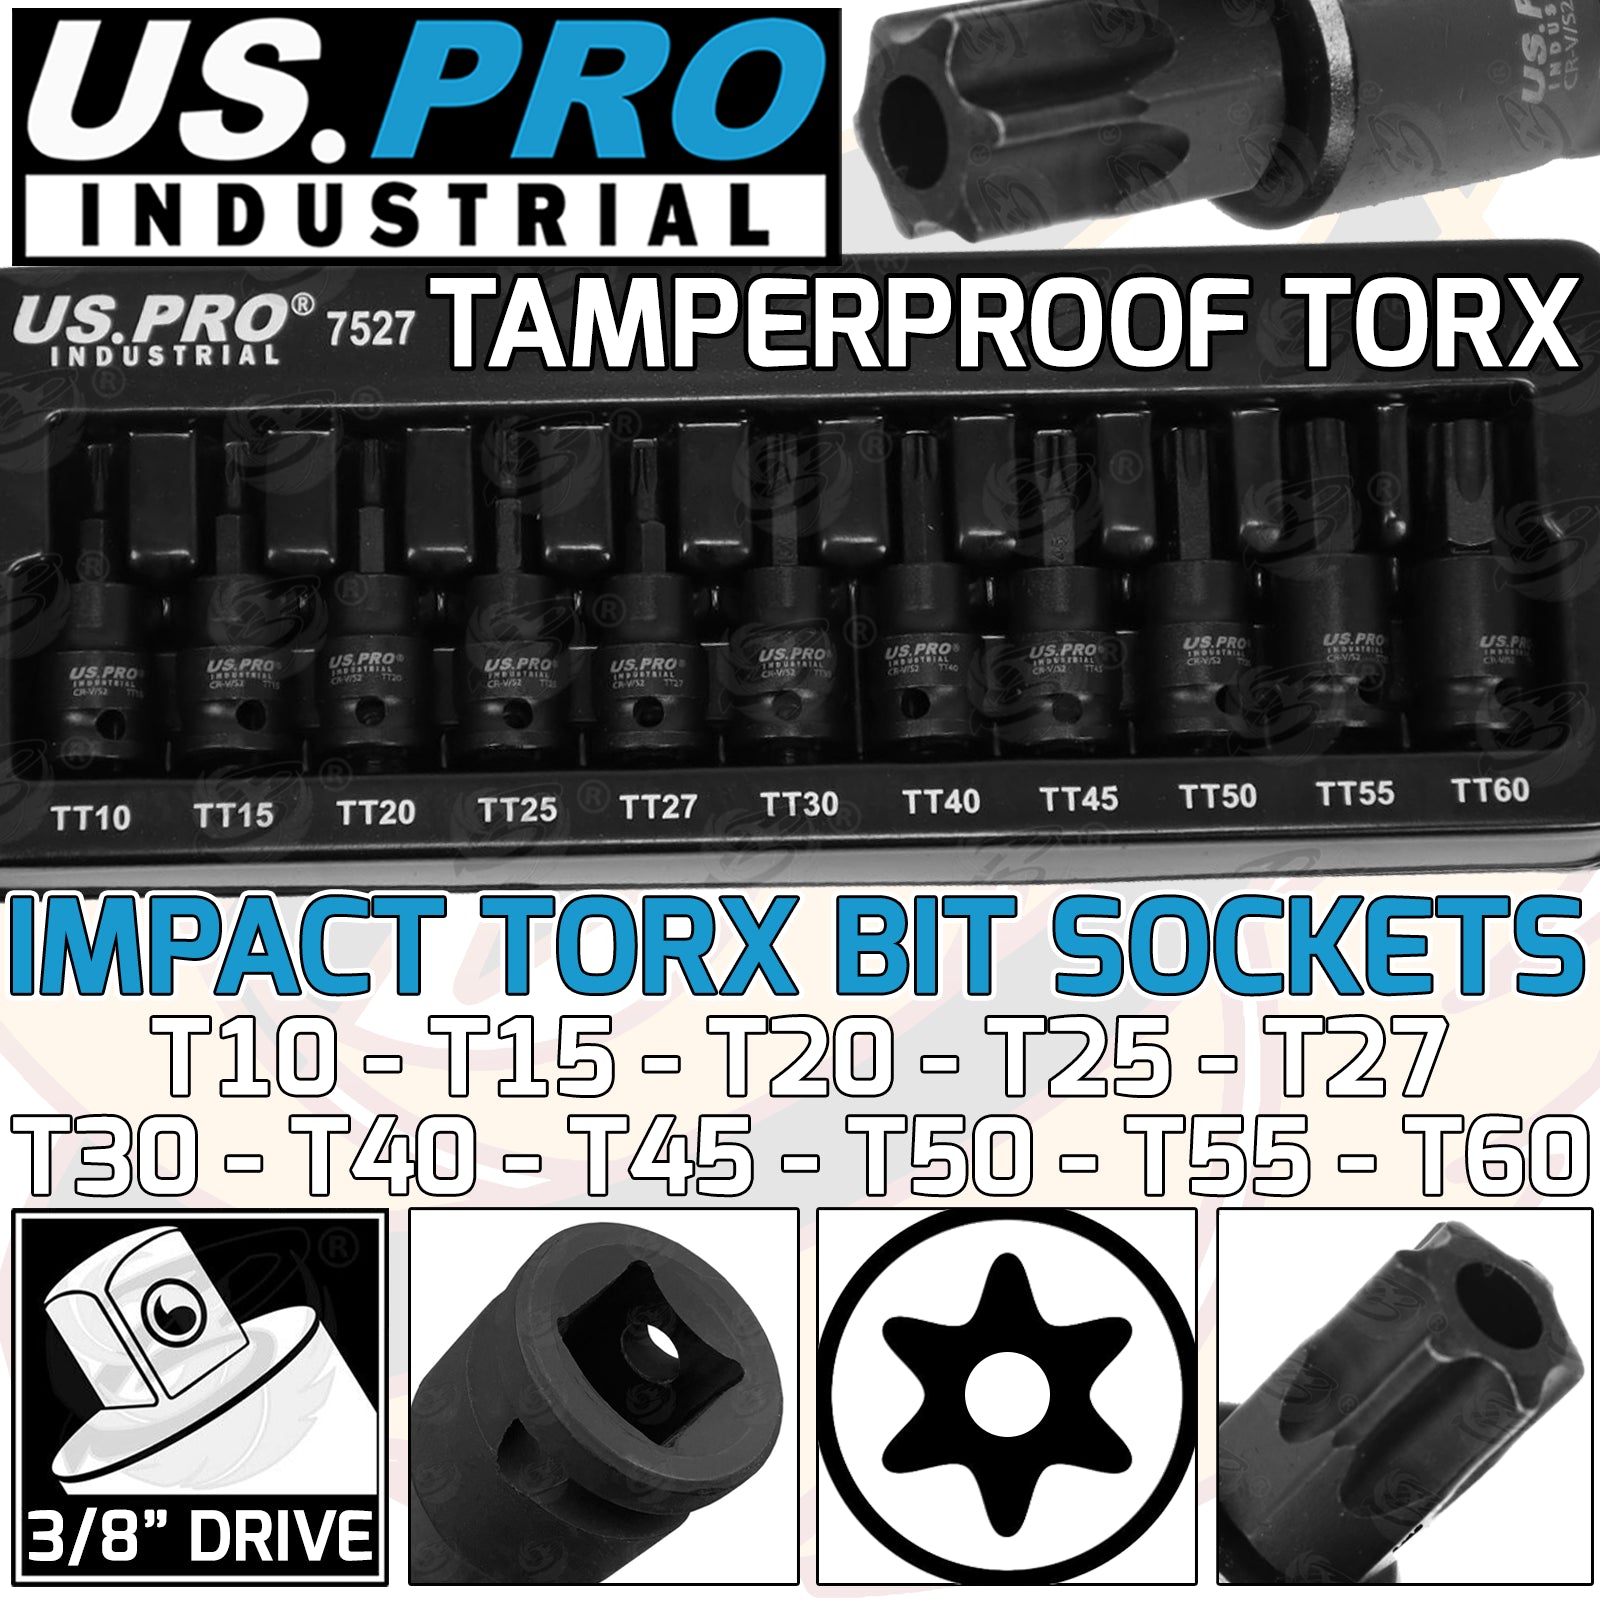 US PRO 11PCS 3/8" DRIVE IMPACT TAMPERPROOF TORX BIT SOCKETS T10 - T60